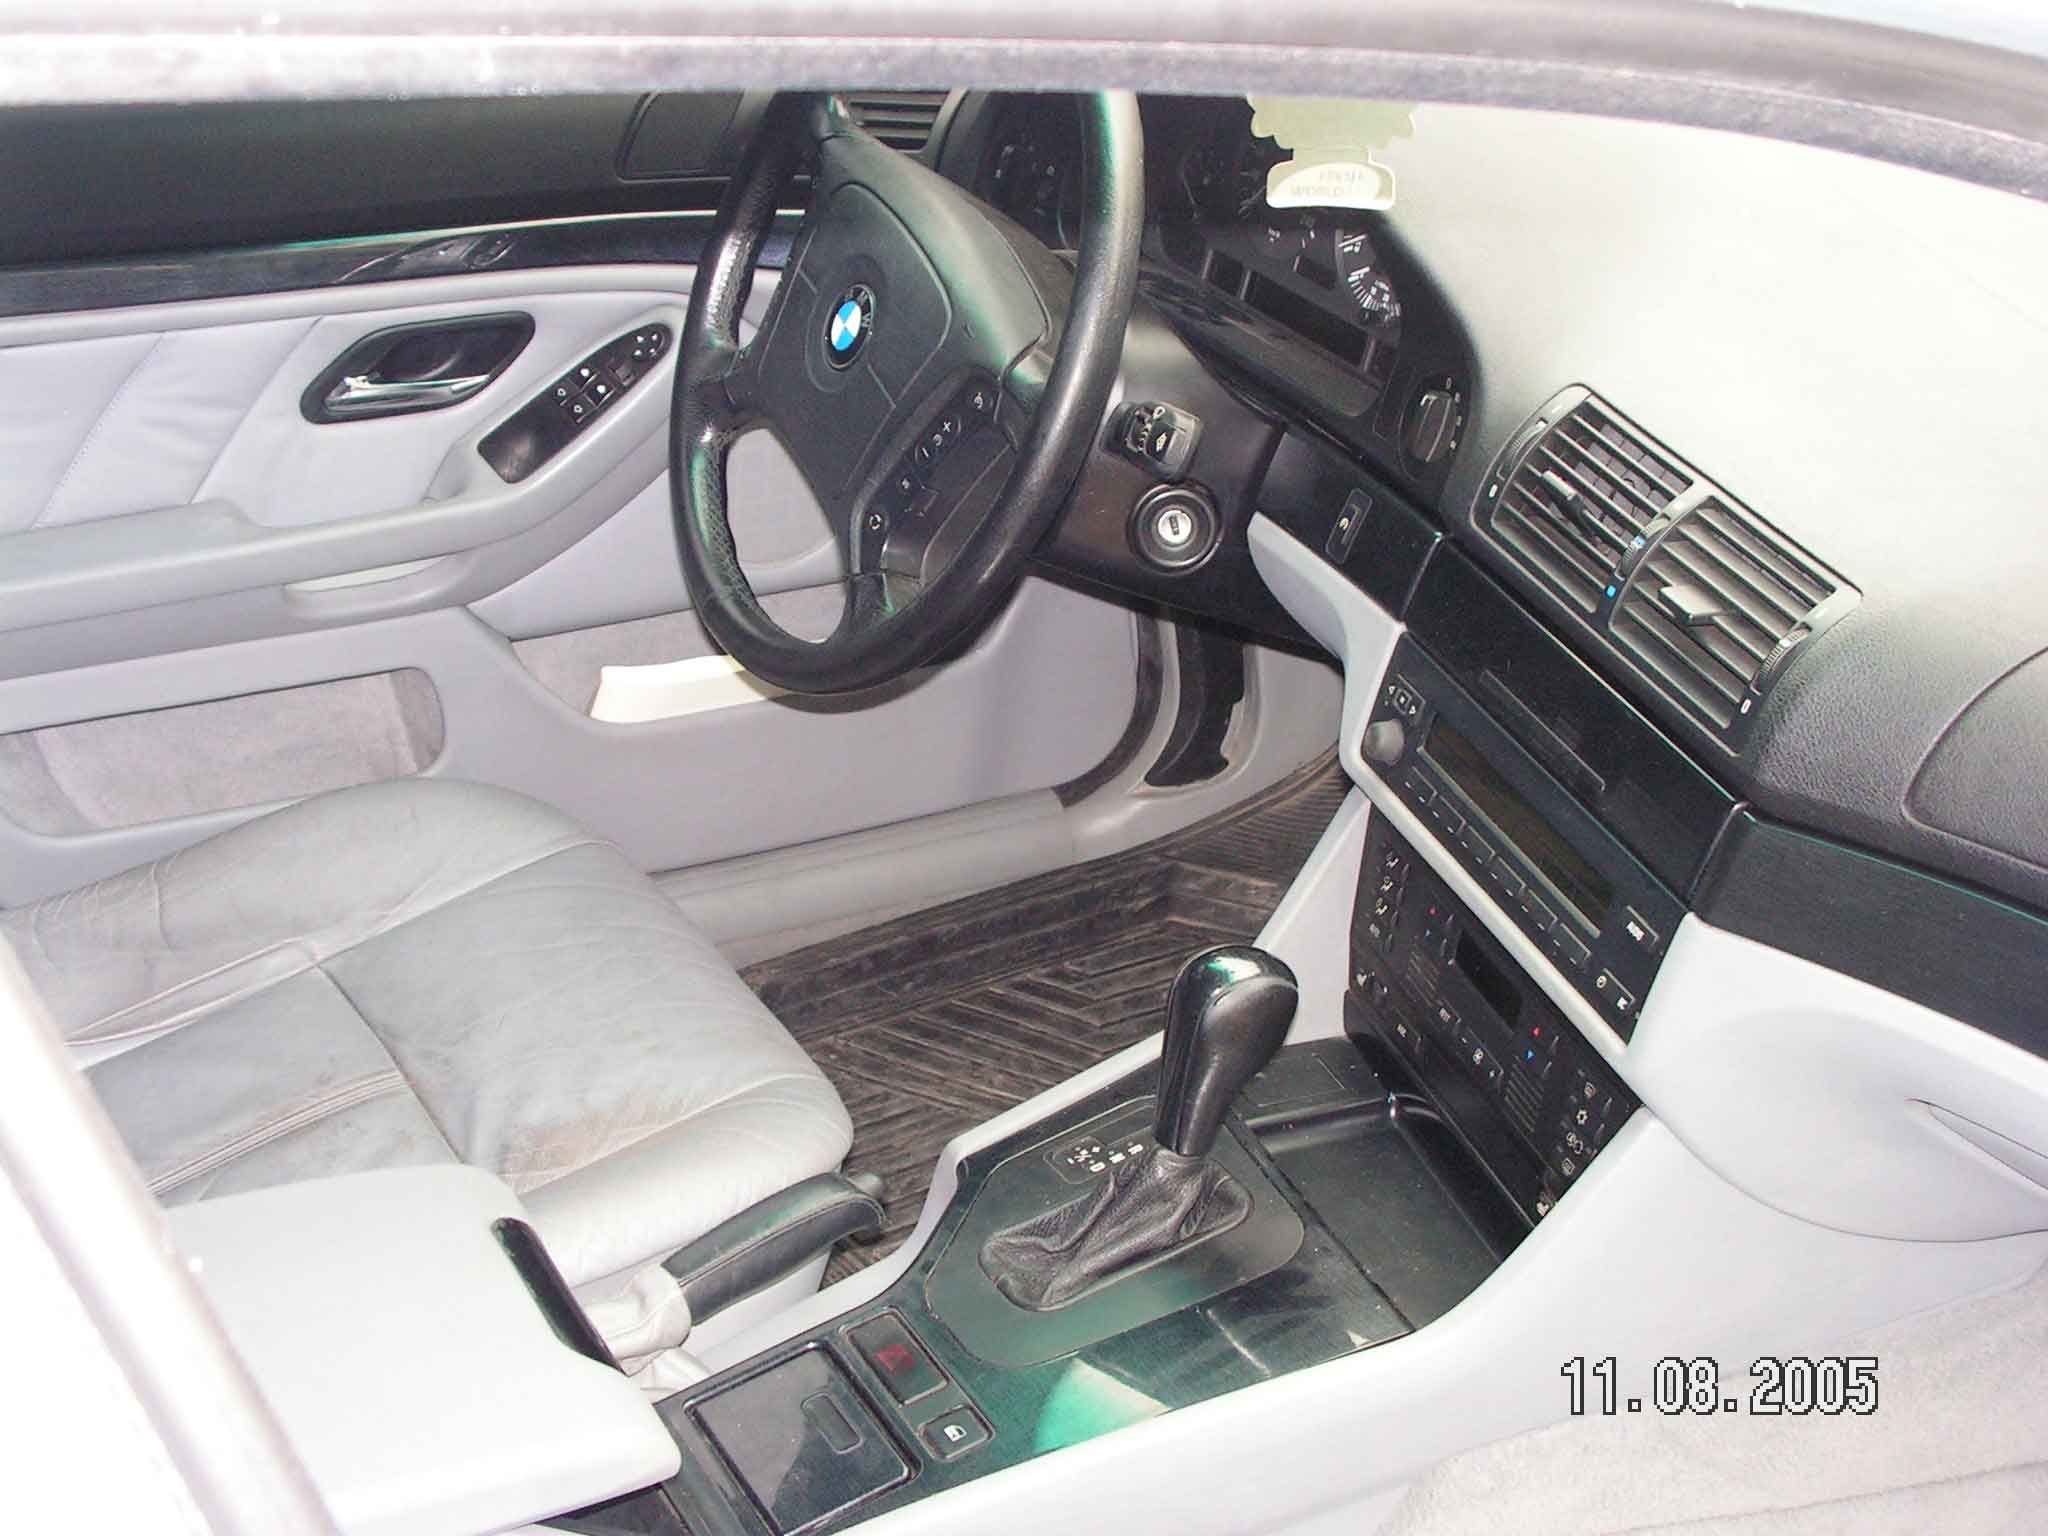 1997 BMW 523I